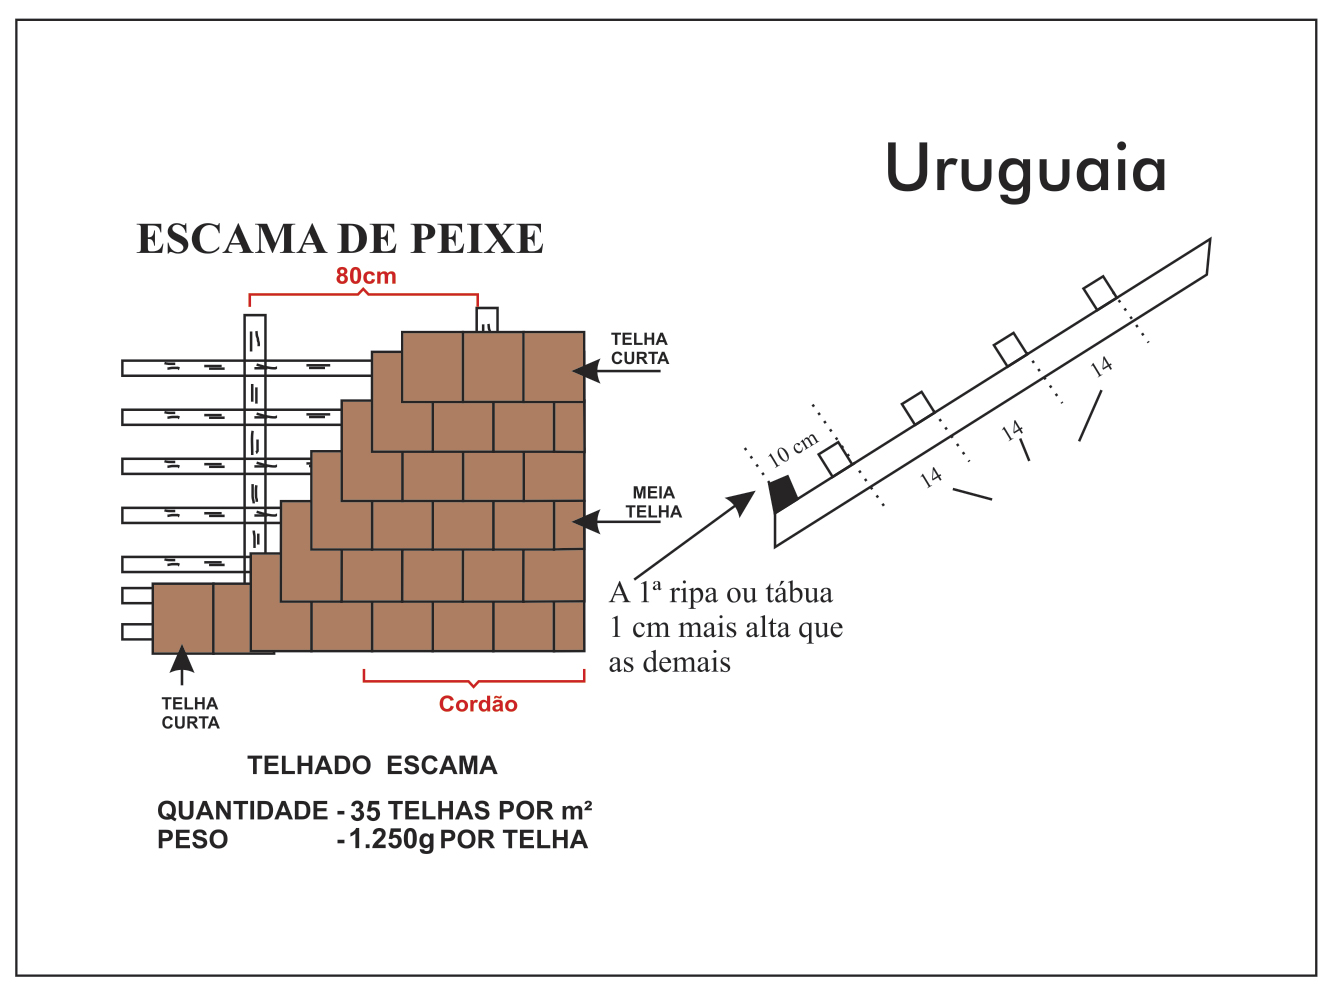 Telhado Escama de Peixe Uruguaia